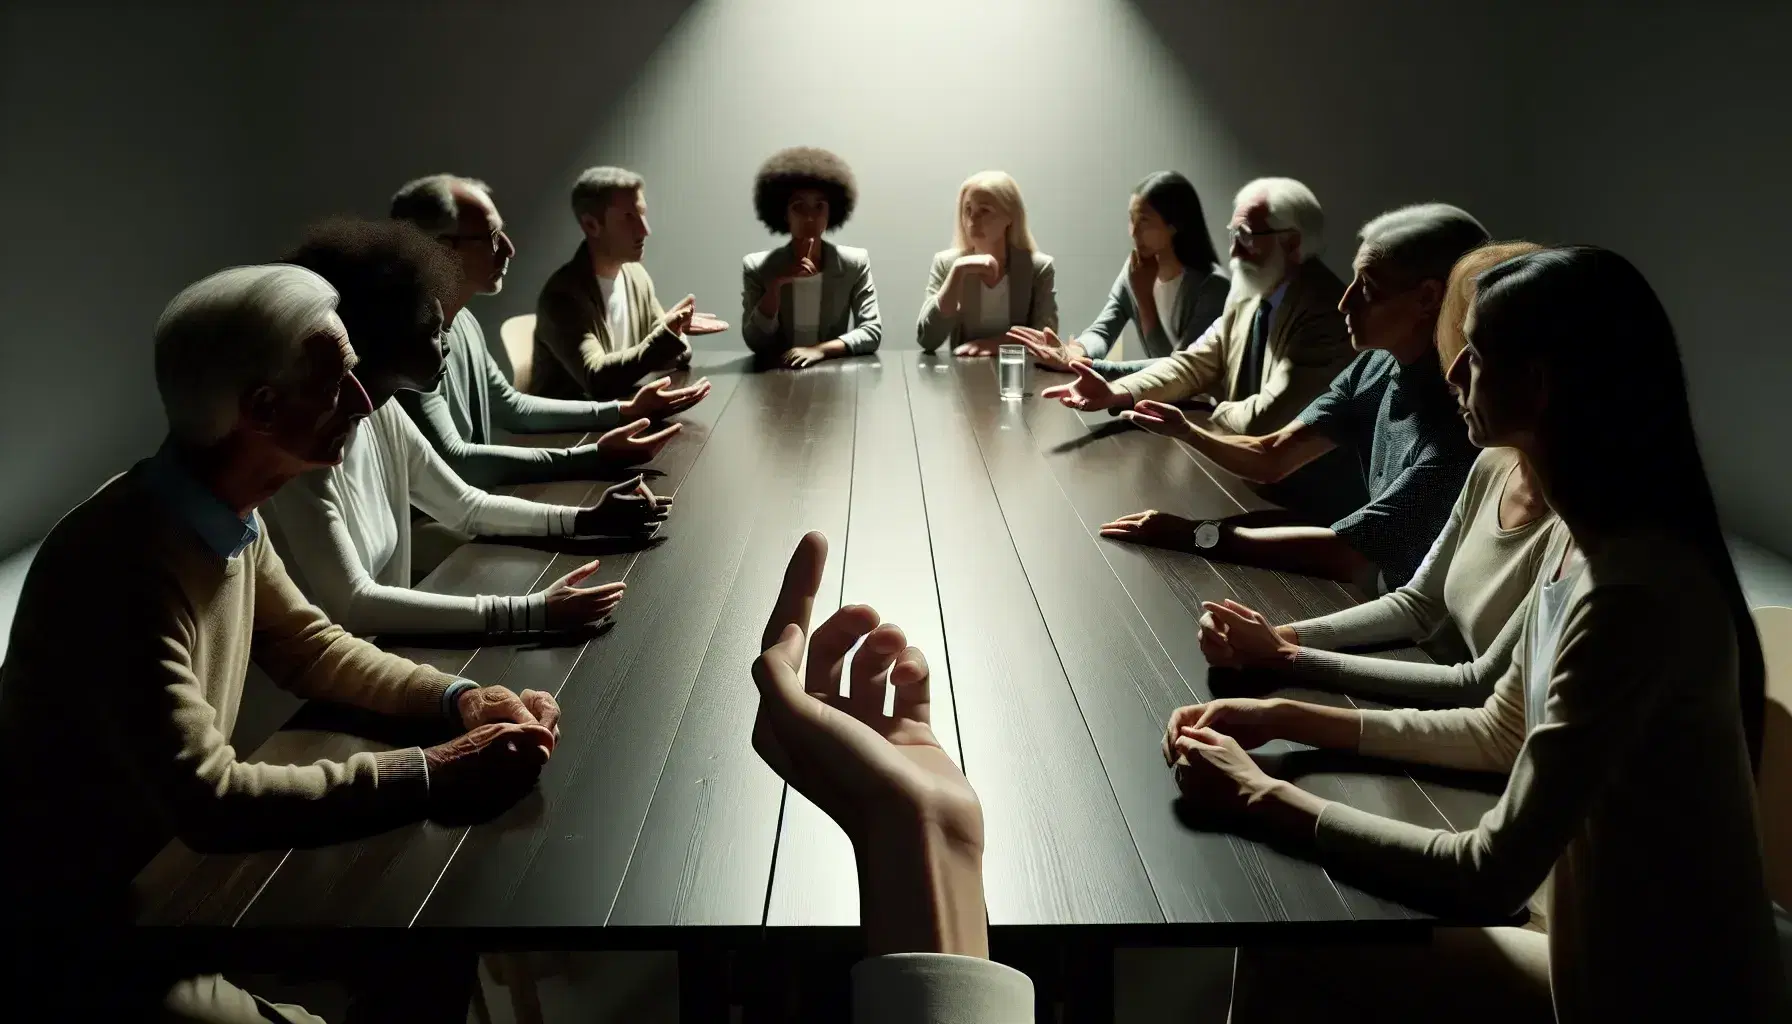 Grupo diverso de personas en animada discusión alrededor de una mesa de madera, gestos de diálogo en una sala iluminada y minimalista.